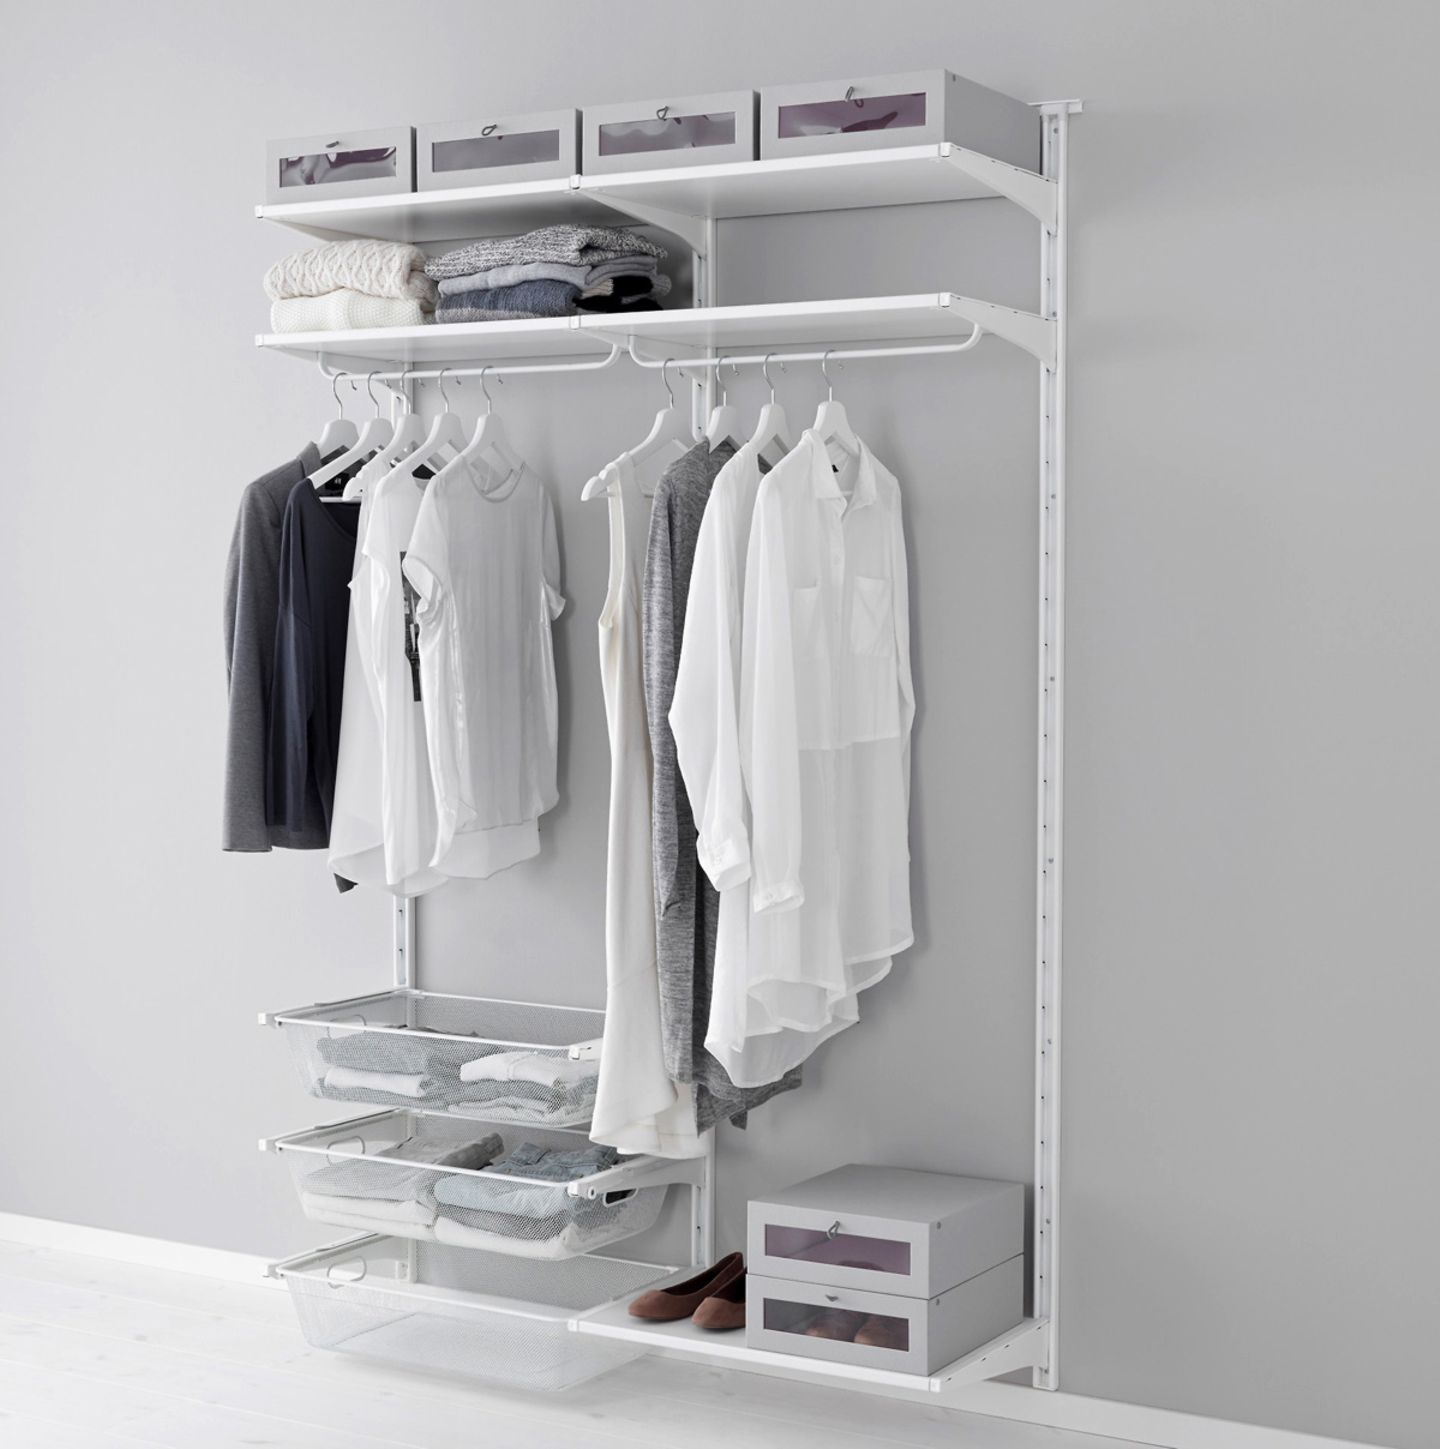 Begehbarer Kleiderschrank System "Algot" von Ikea